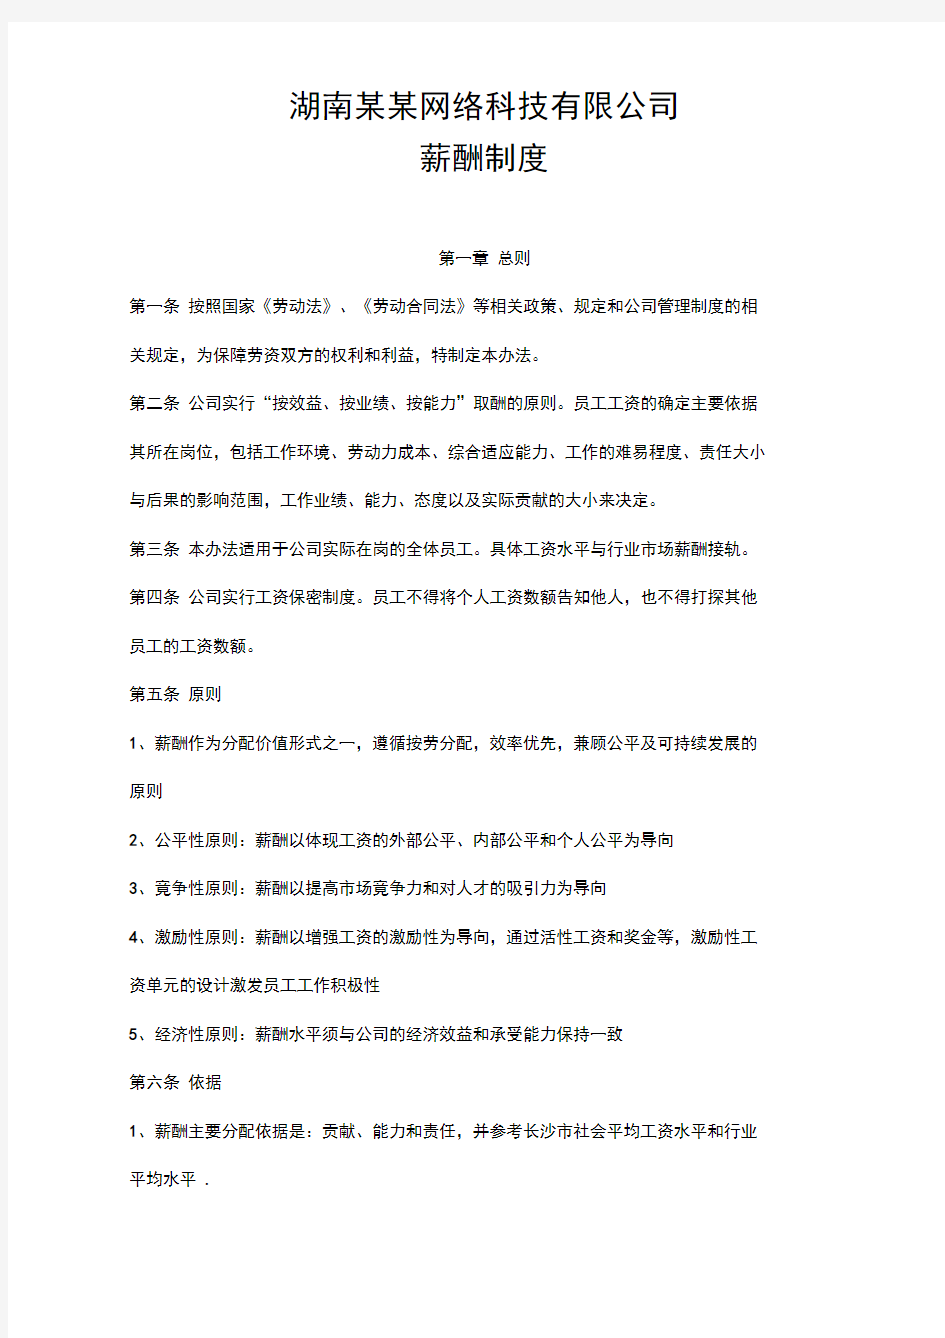 杭州平头哥半导体公司网络科技公司薪酬管理办法